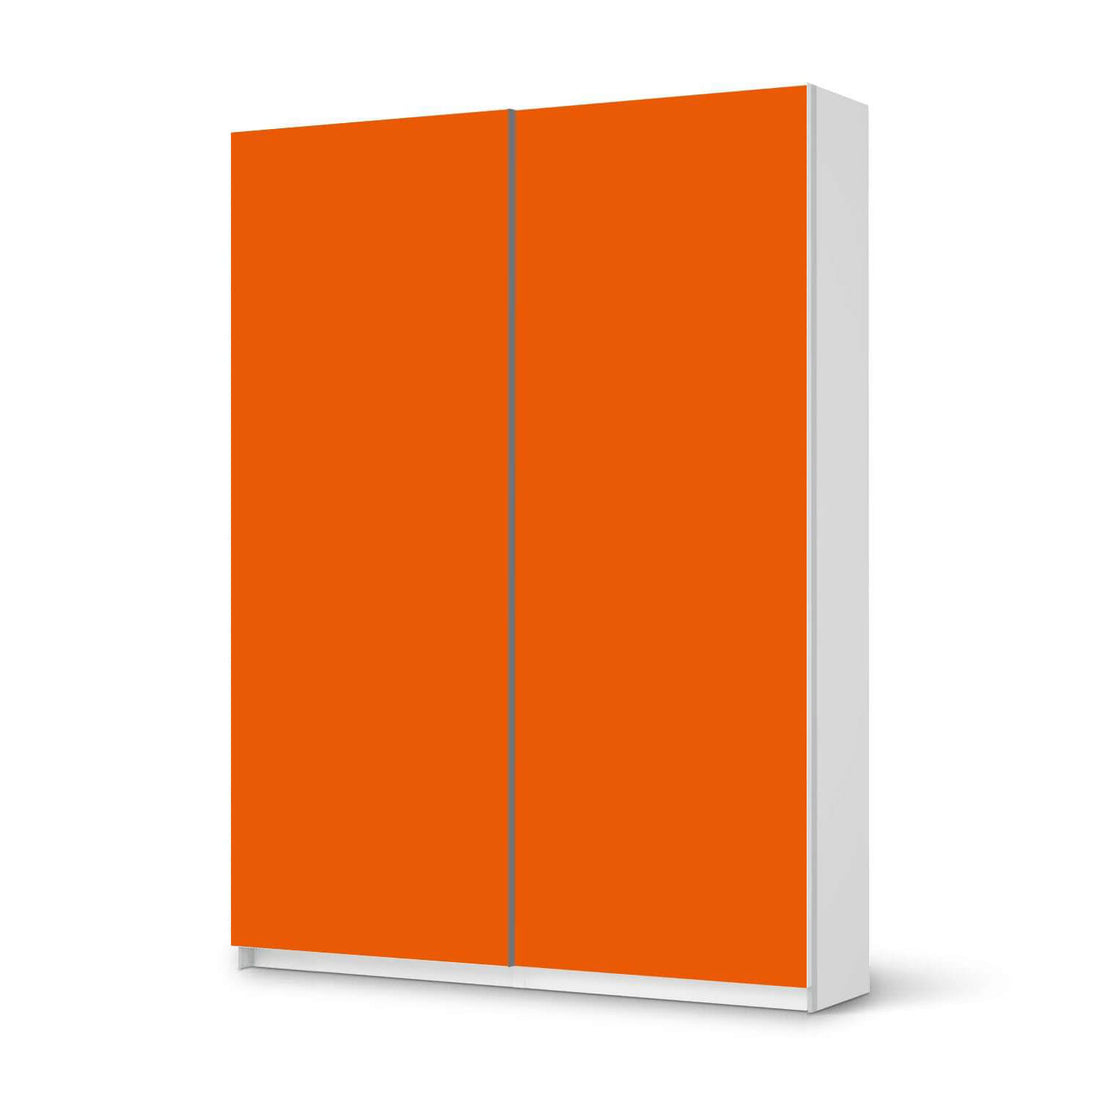 Möbel Klebefolie Orange Dark - IKEA Pax Schrank 201 cm Höhe - Schiebetür 75 cm - weiss